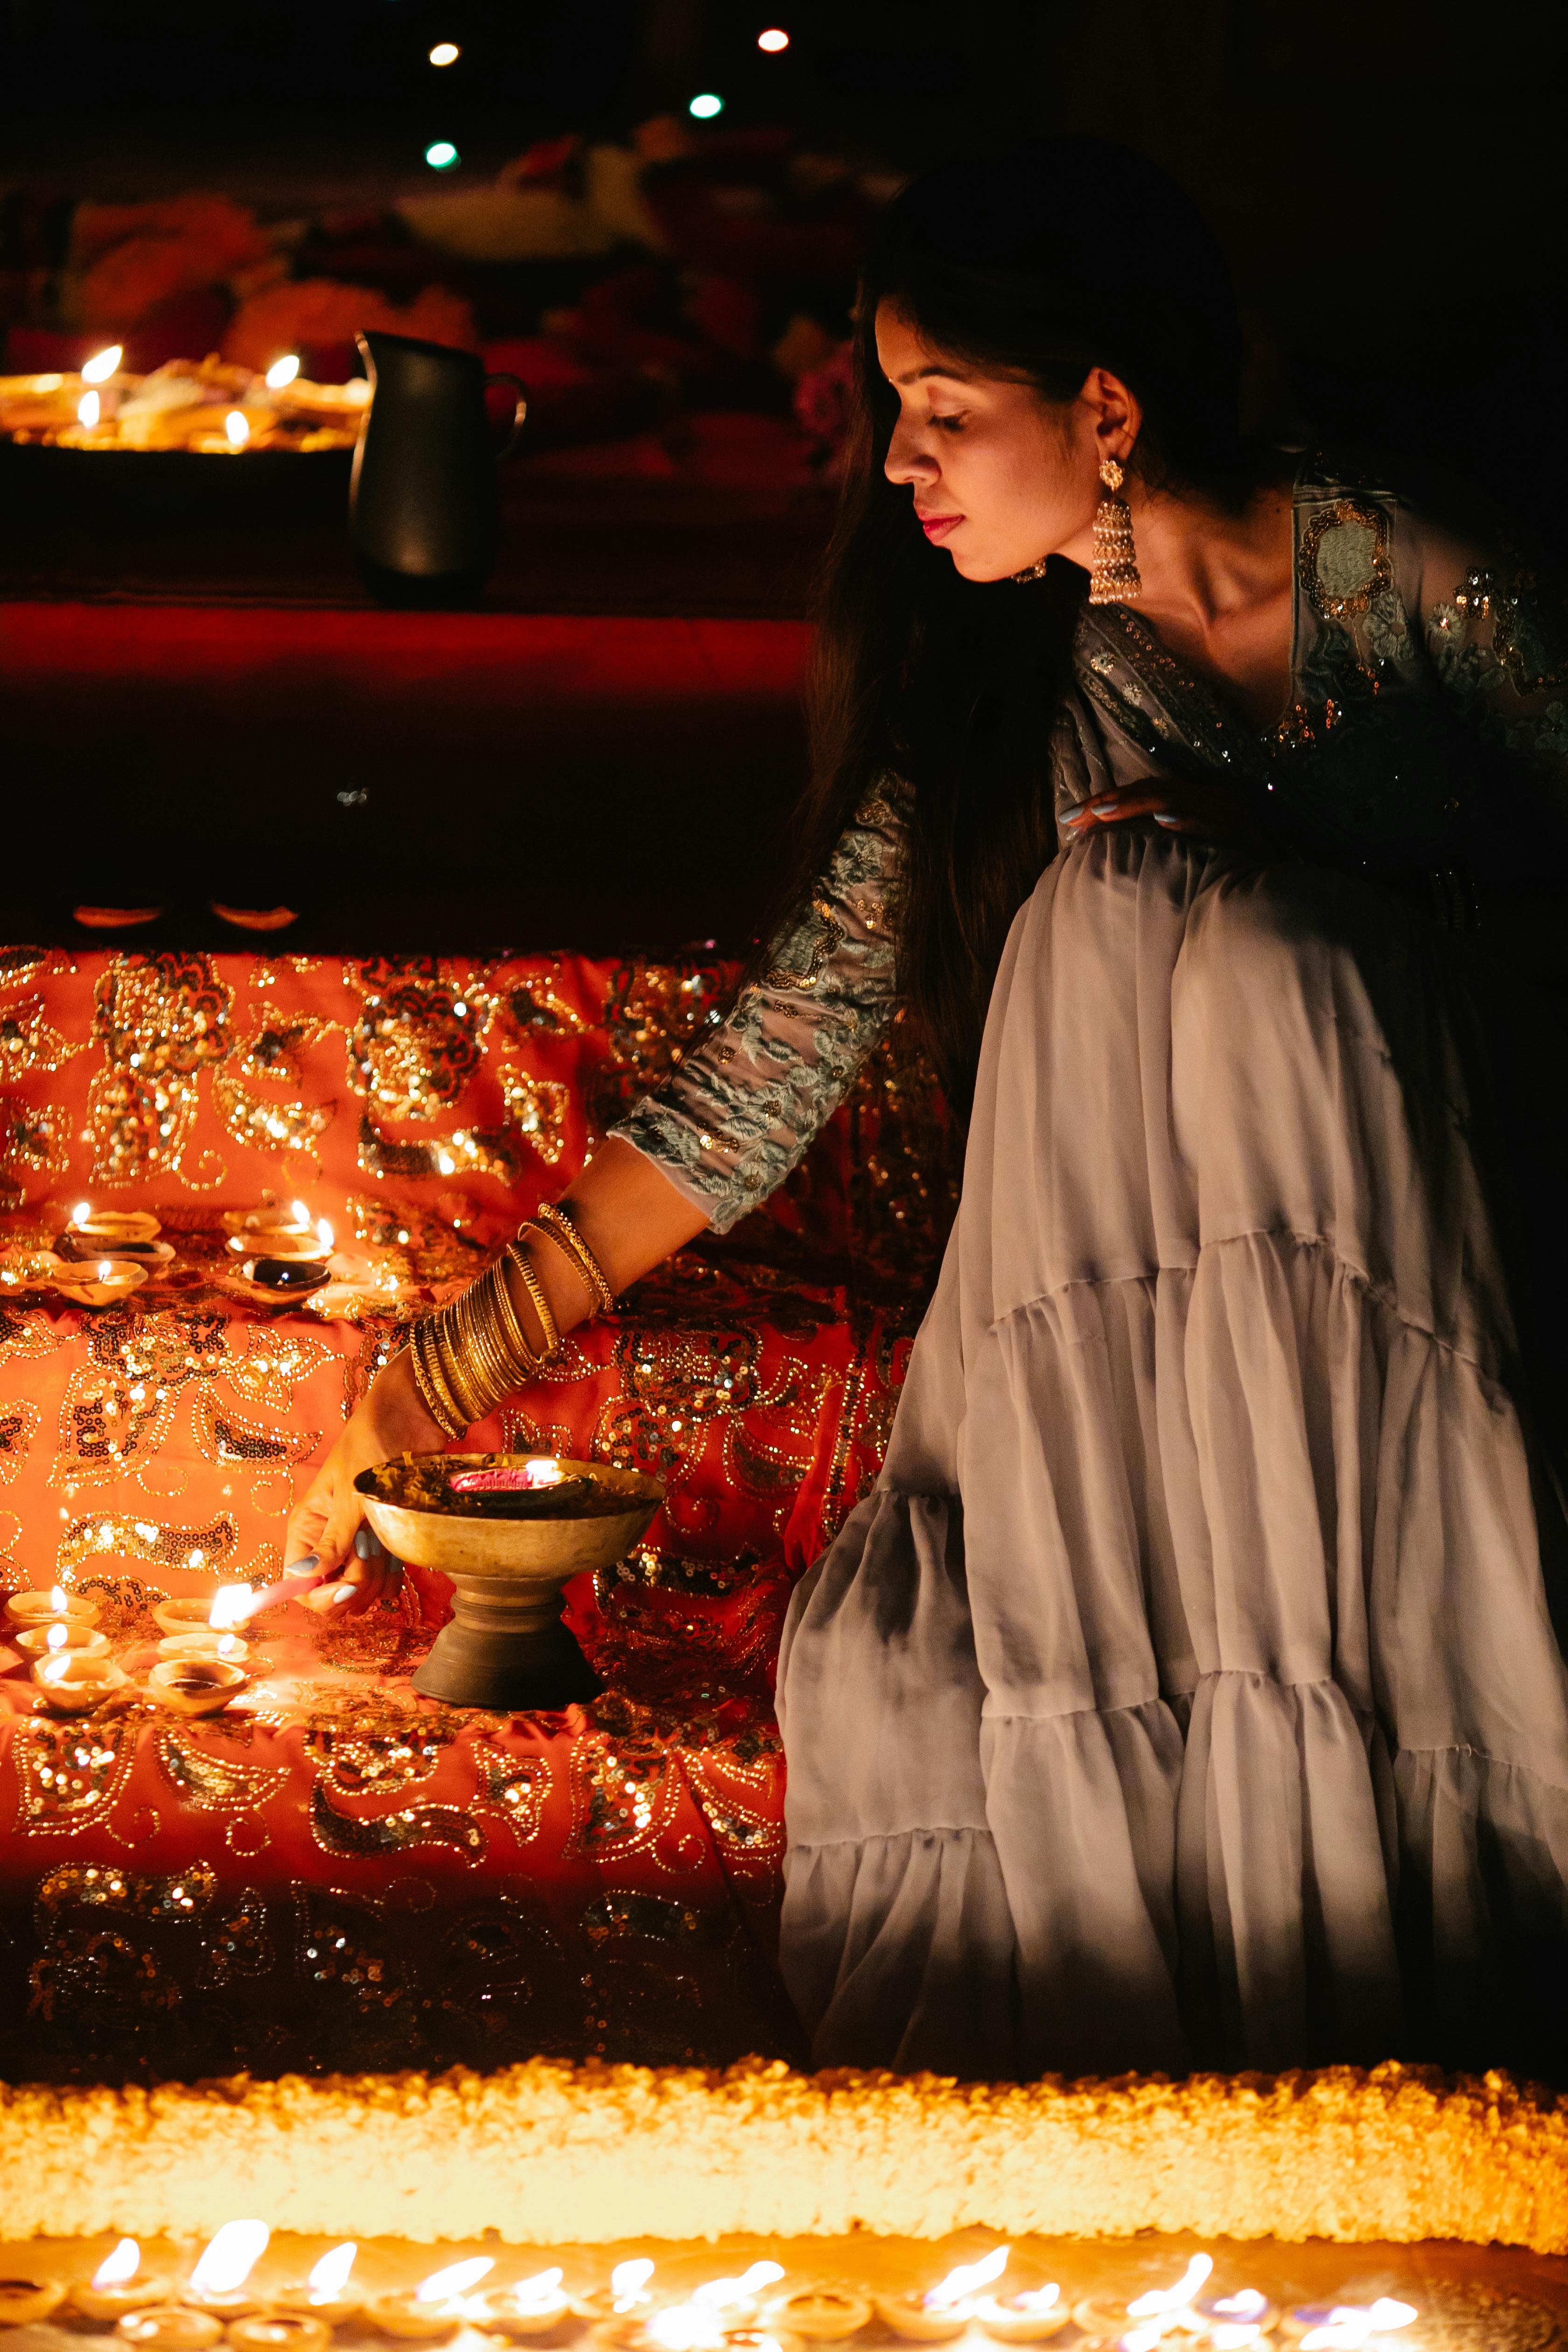 Diwali Photo Poses For Girls | Diwali Photography Ideas For Girls |  Photoshoot Ideas For Diwali - YouTube